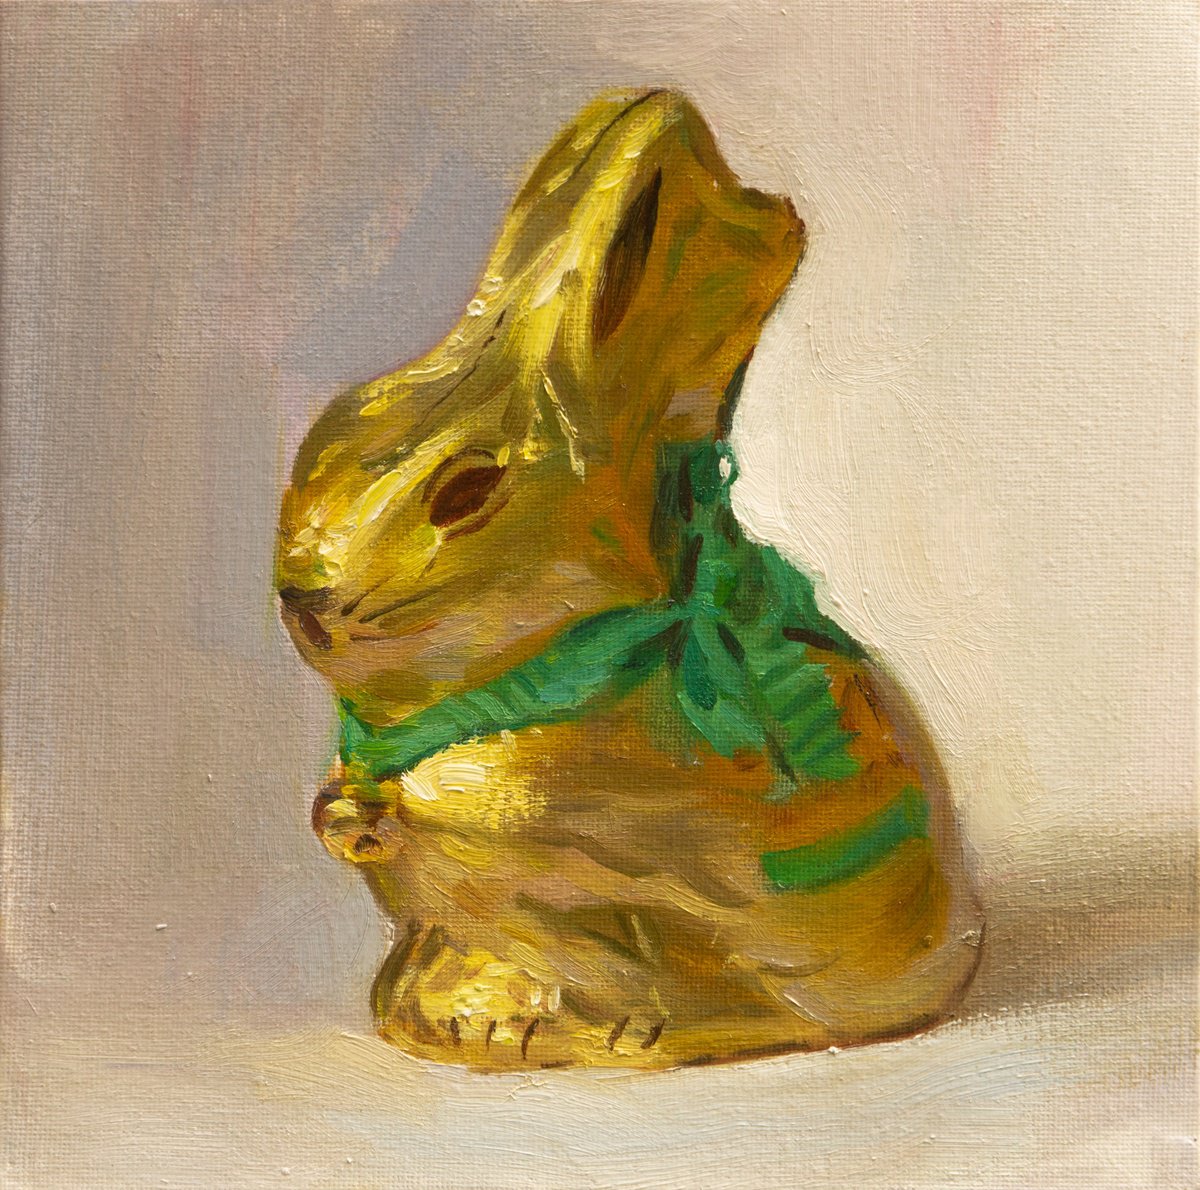 Gold bunny3 by Anastasia Borodina